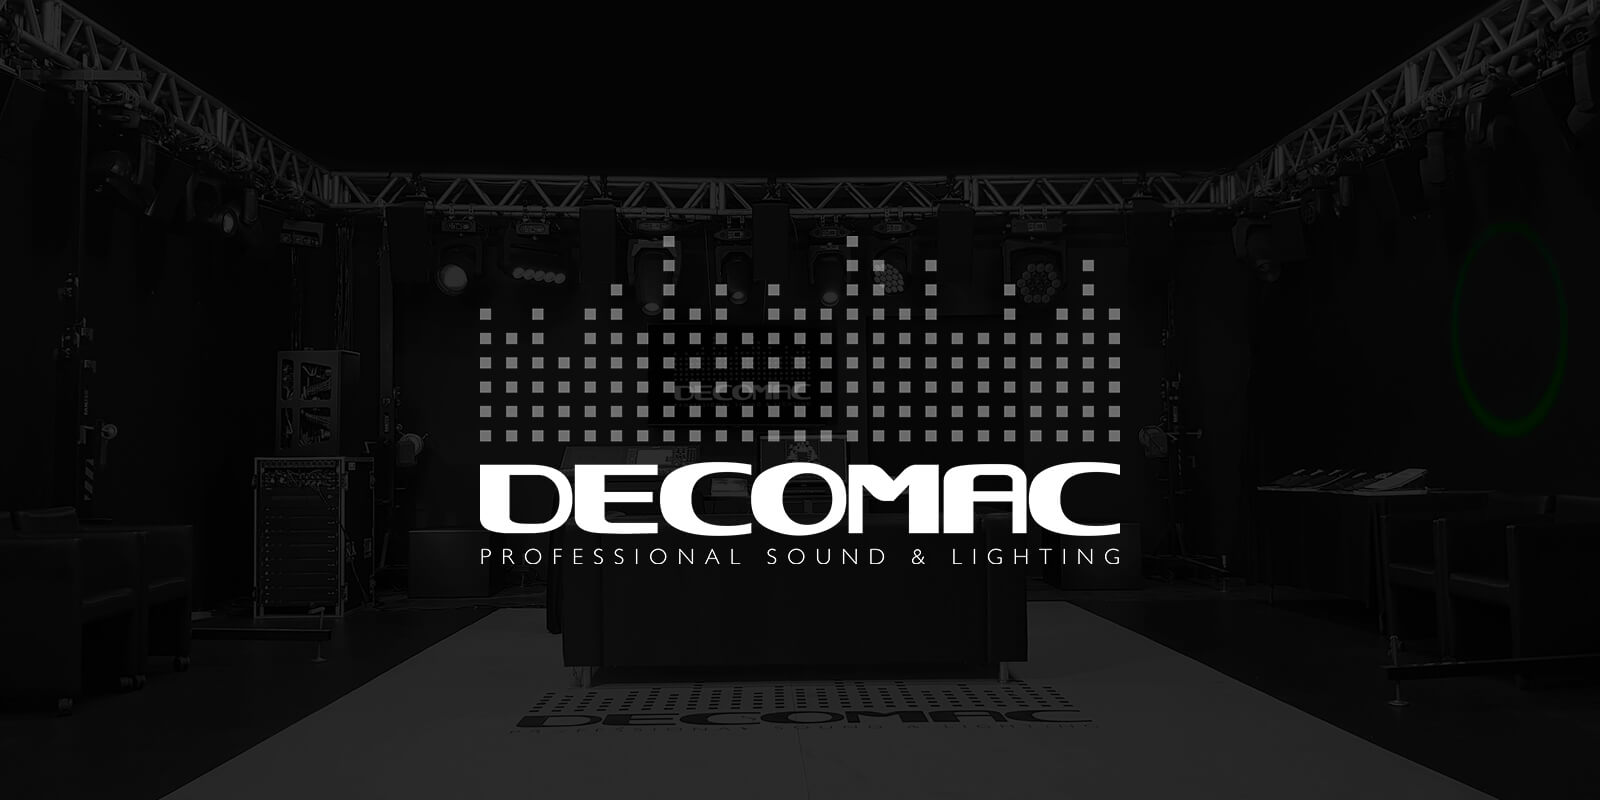 (c) Decomac.com.br